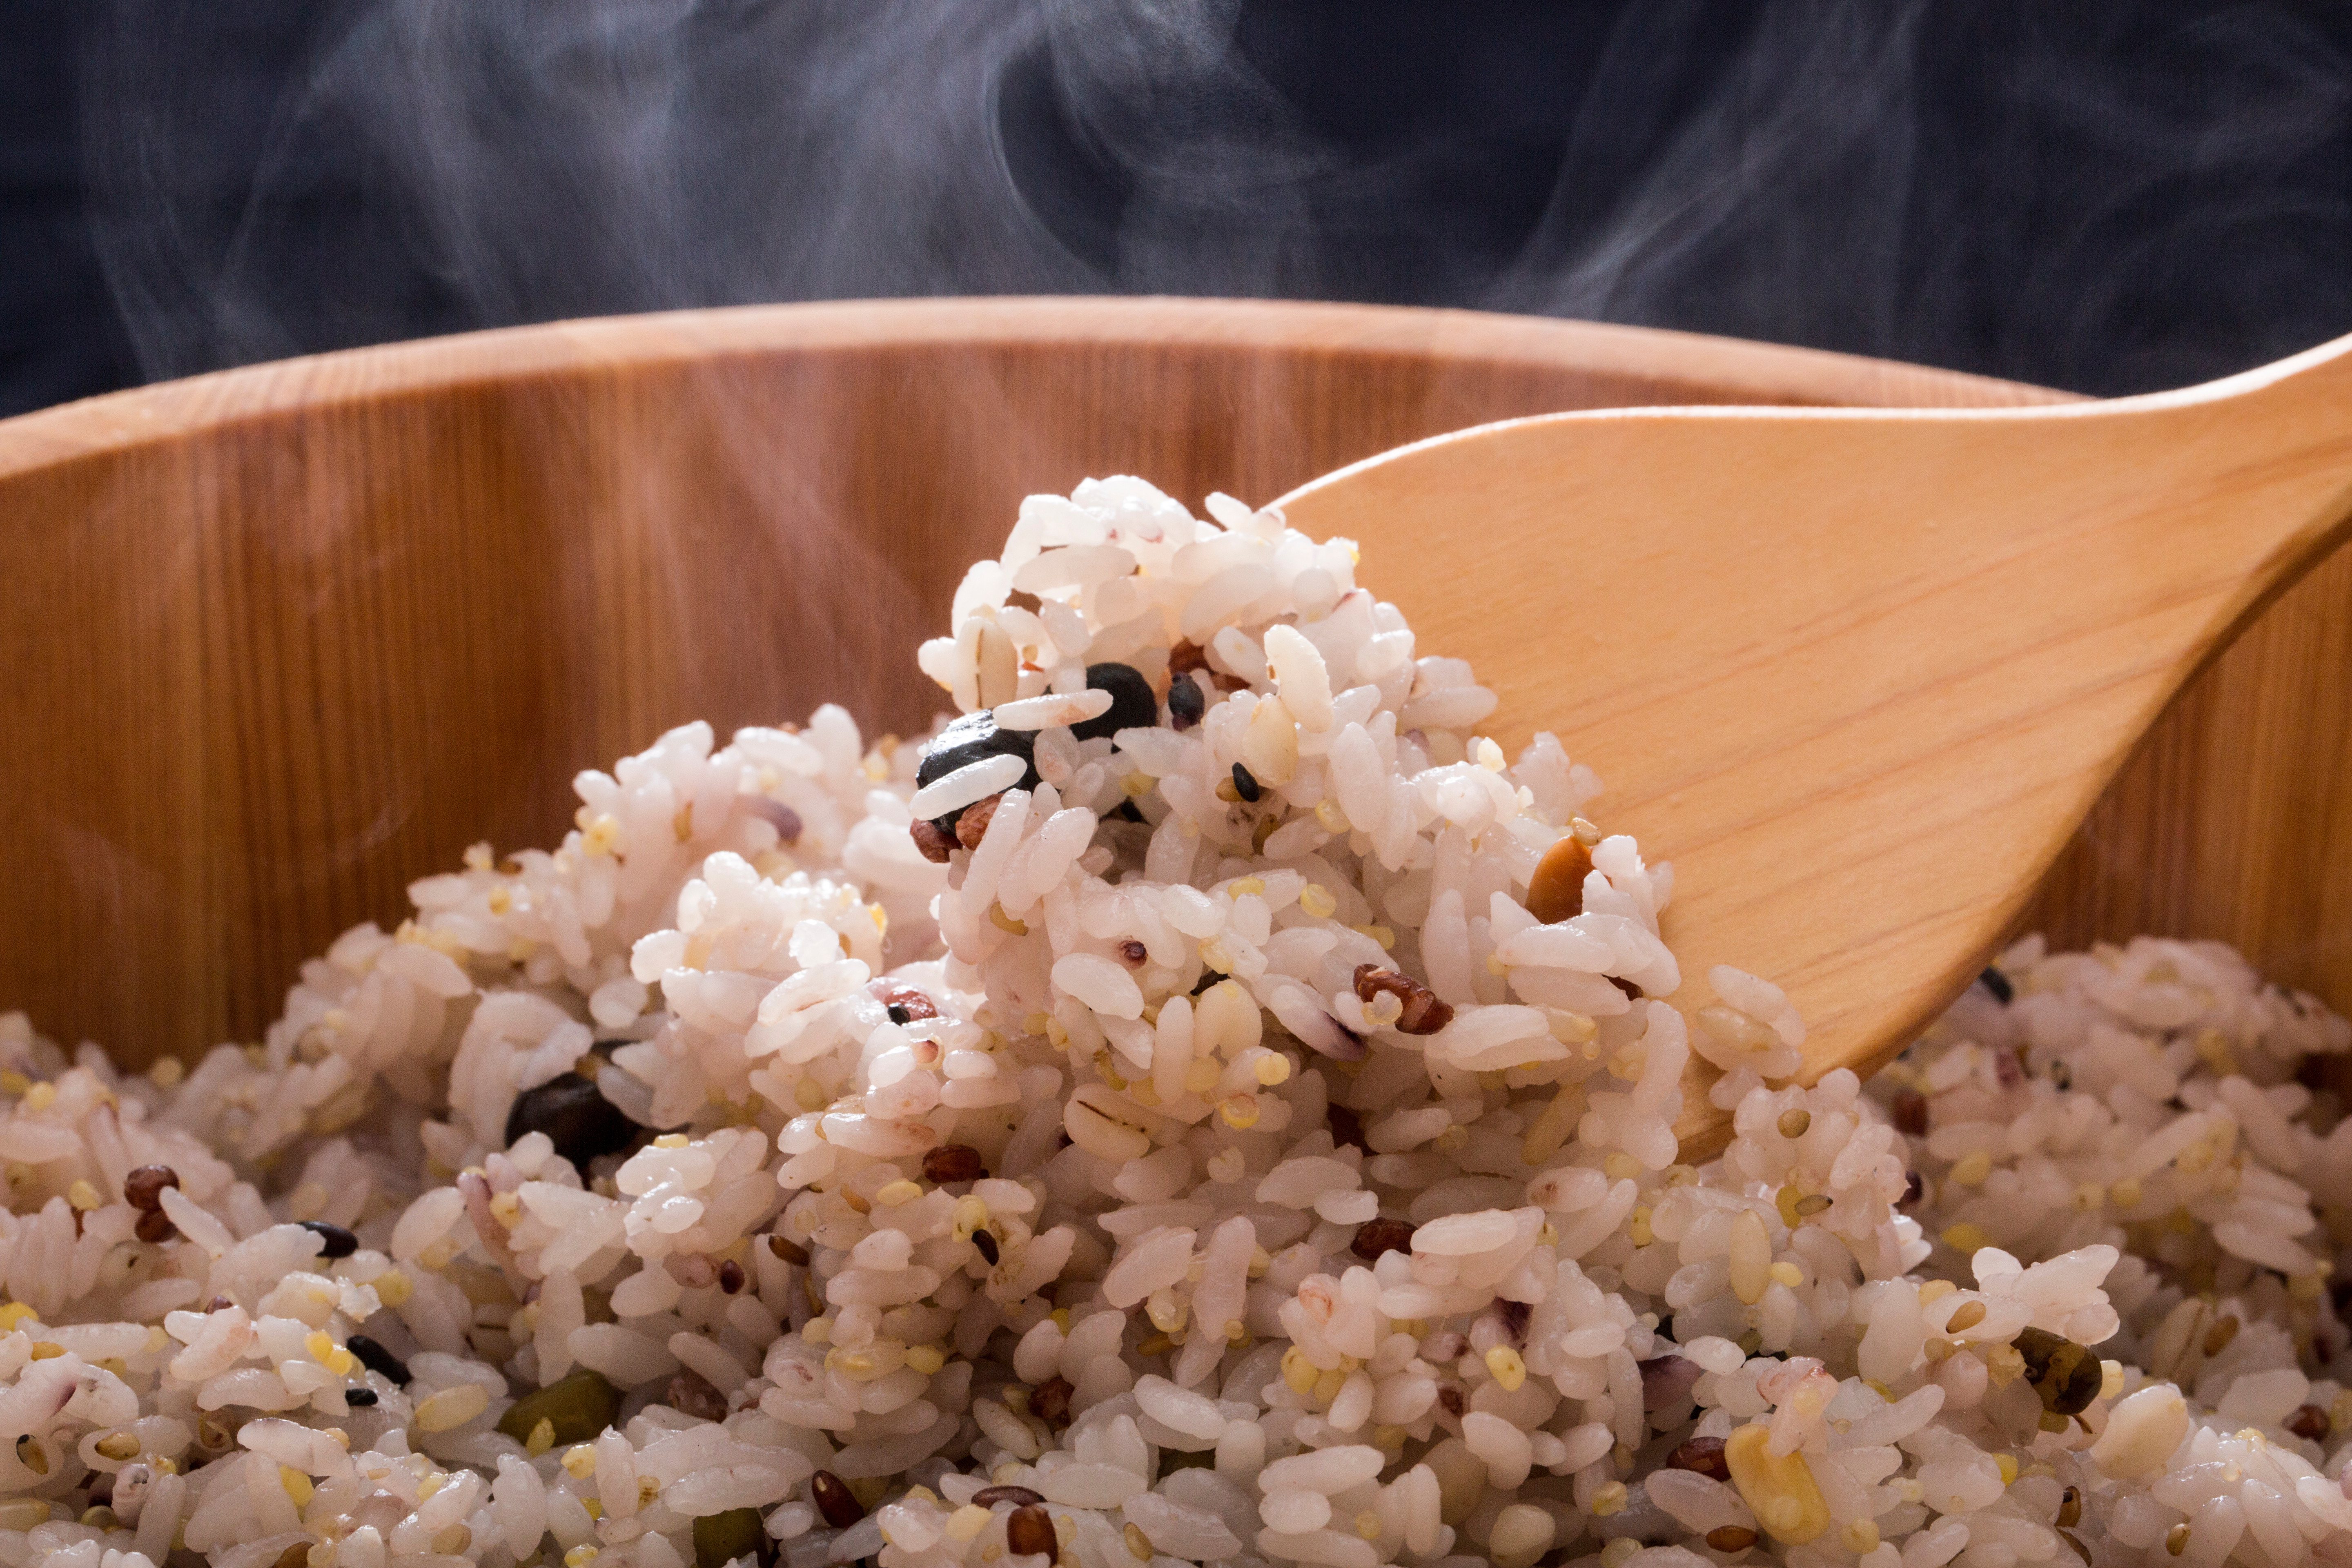 將白米放在下層，浸泡後的糙米、什穀米、蕎麥、燕麥等則在上層，接著放進電鍋煮熟，同一鍋分層，各取所需。圖/123RF